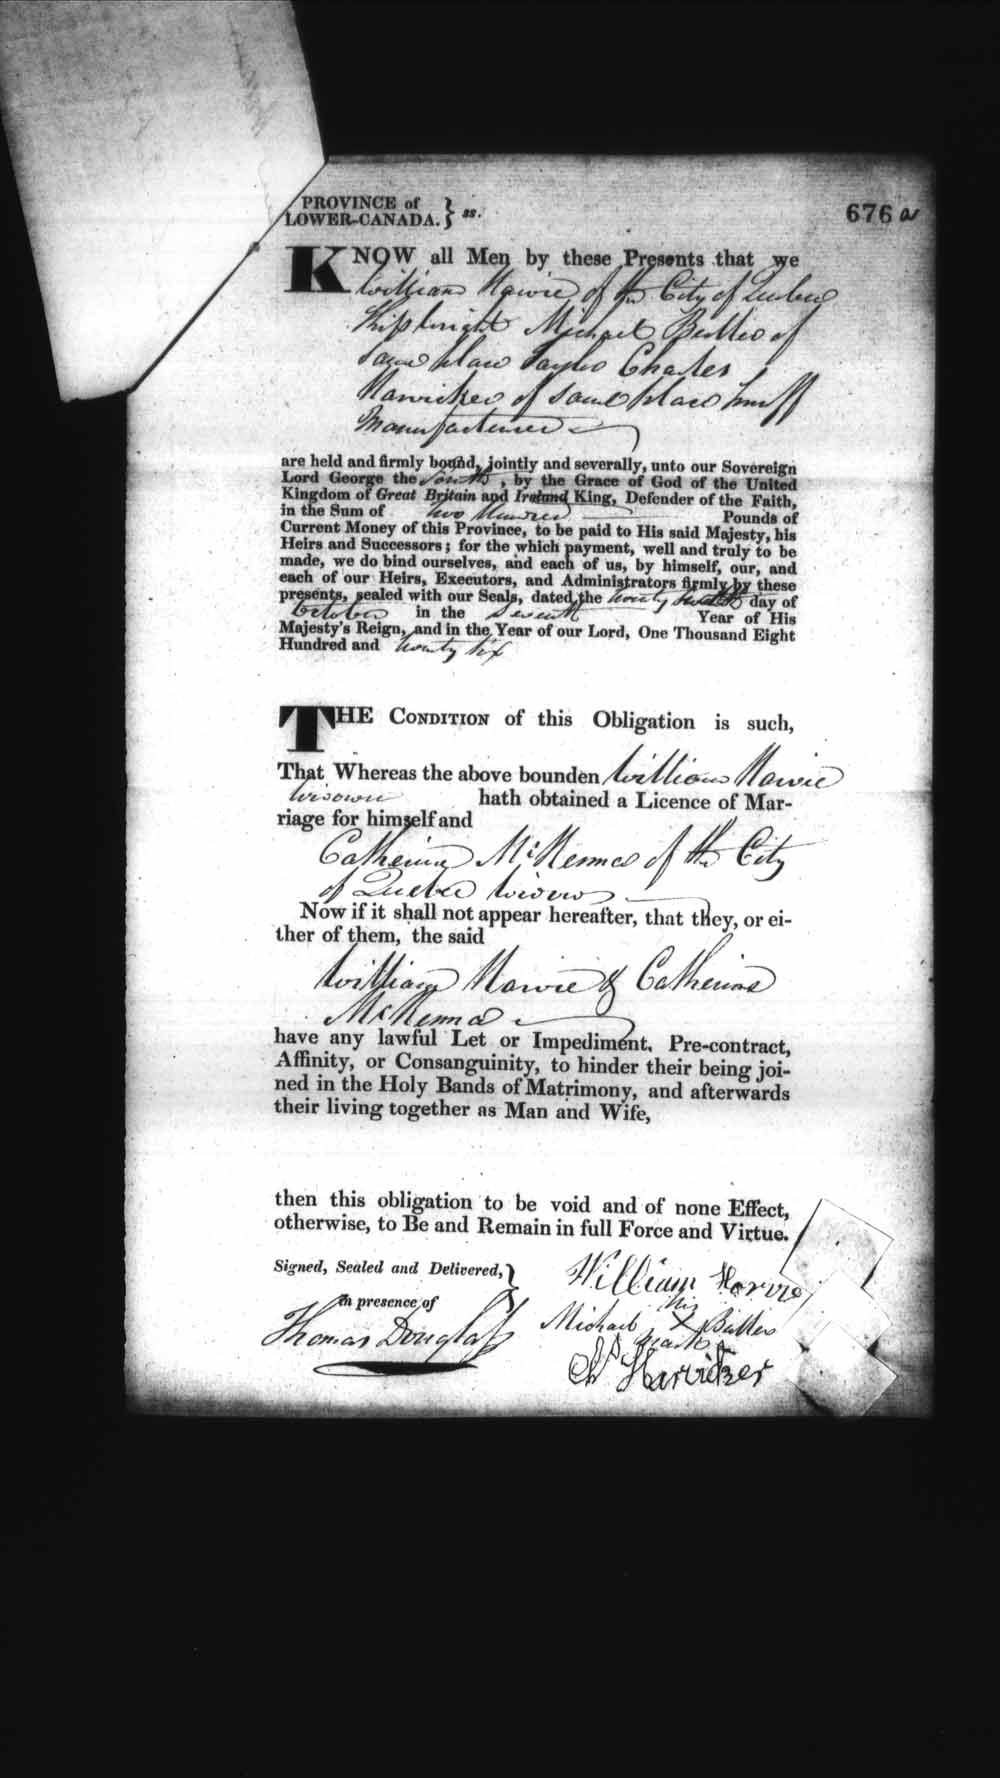 Page numérisé de Cautionnements de mariages pour le Haut-Canada et le Bas-Canada (1779-1865) pour l'image numéro: e008236717